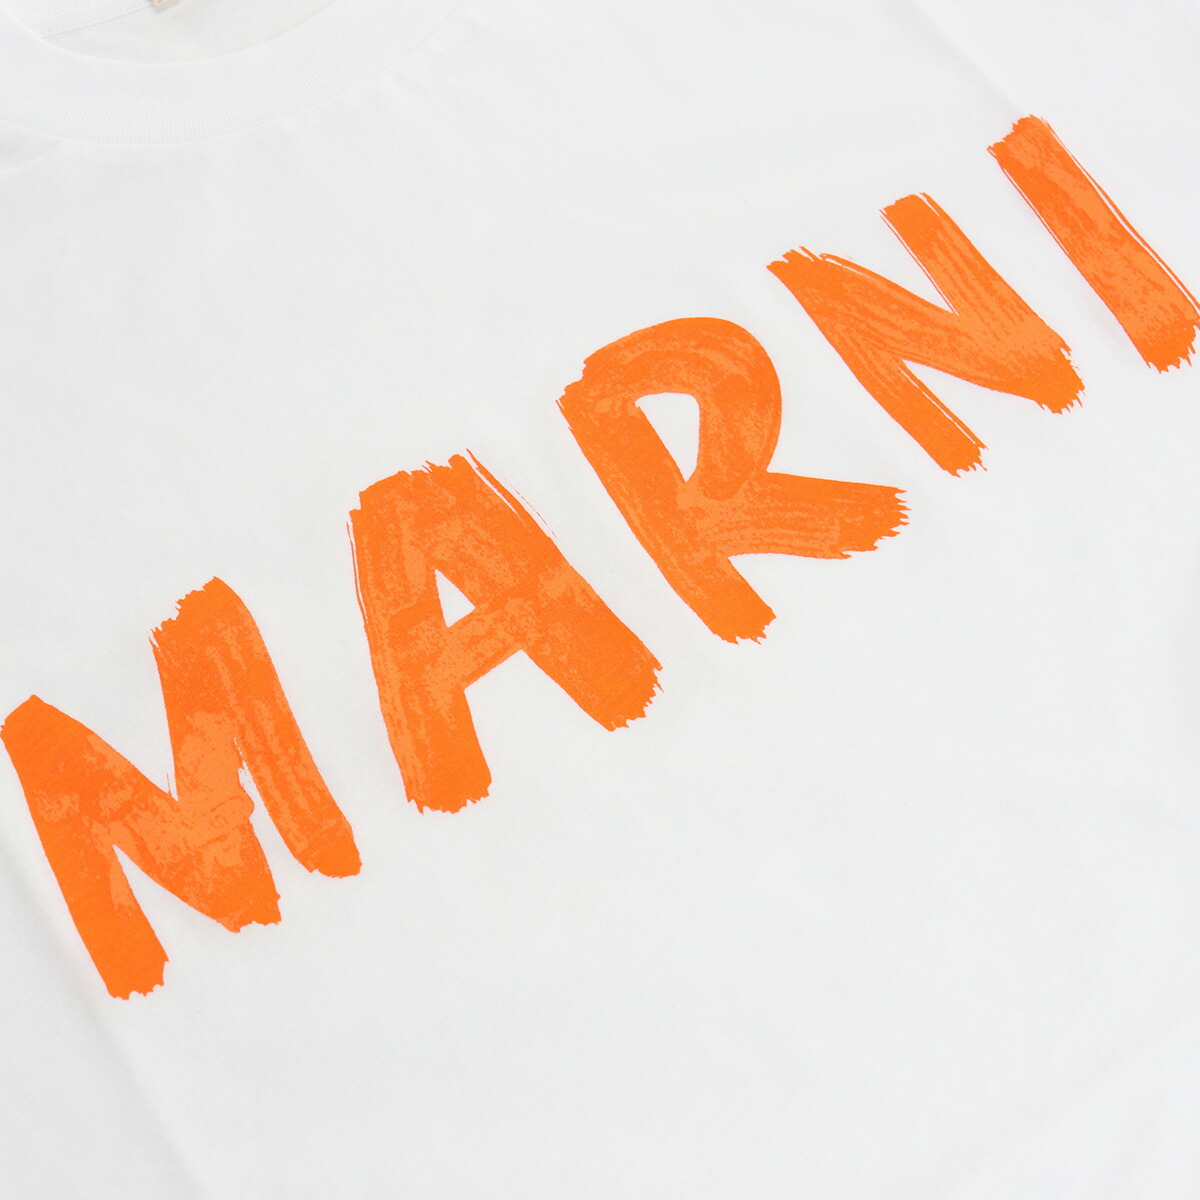 MARNI マルニ THJE0129PH Tシャツ ホワイト系 レディース